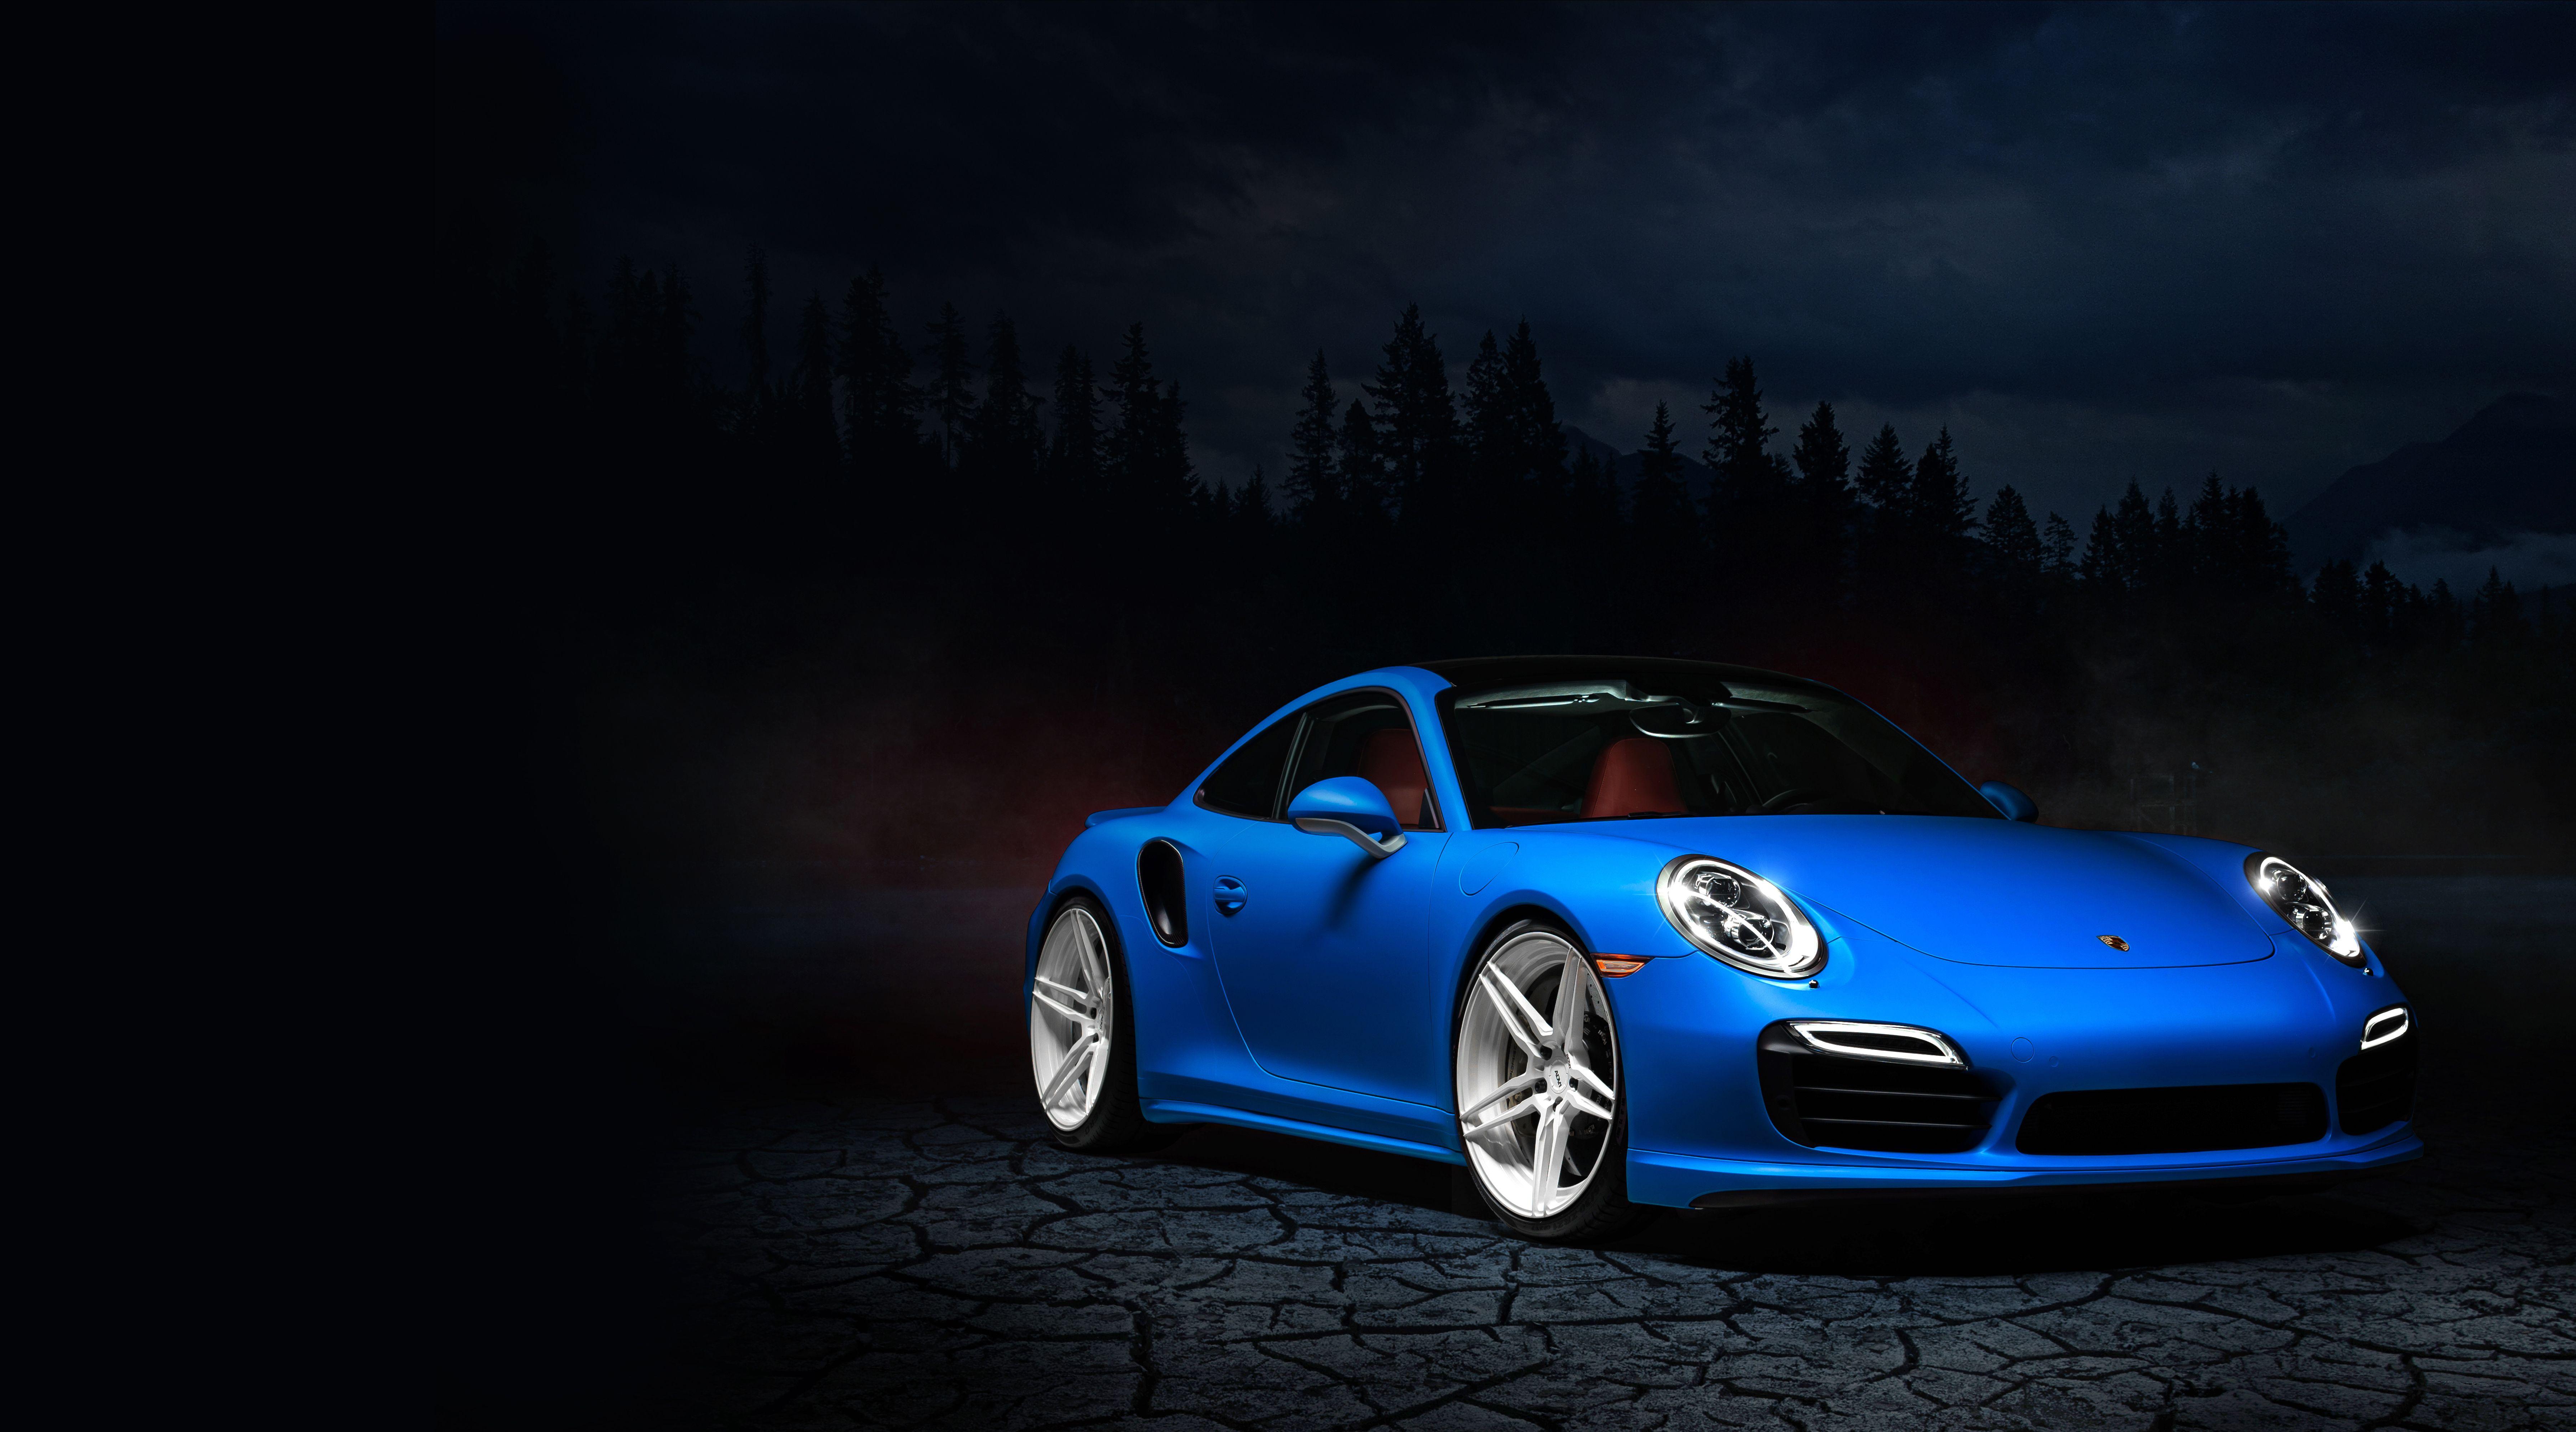 4k Ultra Hd Porsche Wallpapers Top Free 4k Ultra Hd Porsche Backgrounds Wallpaperaccess